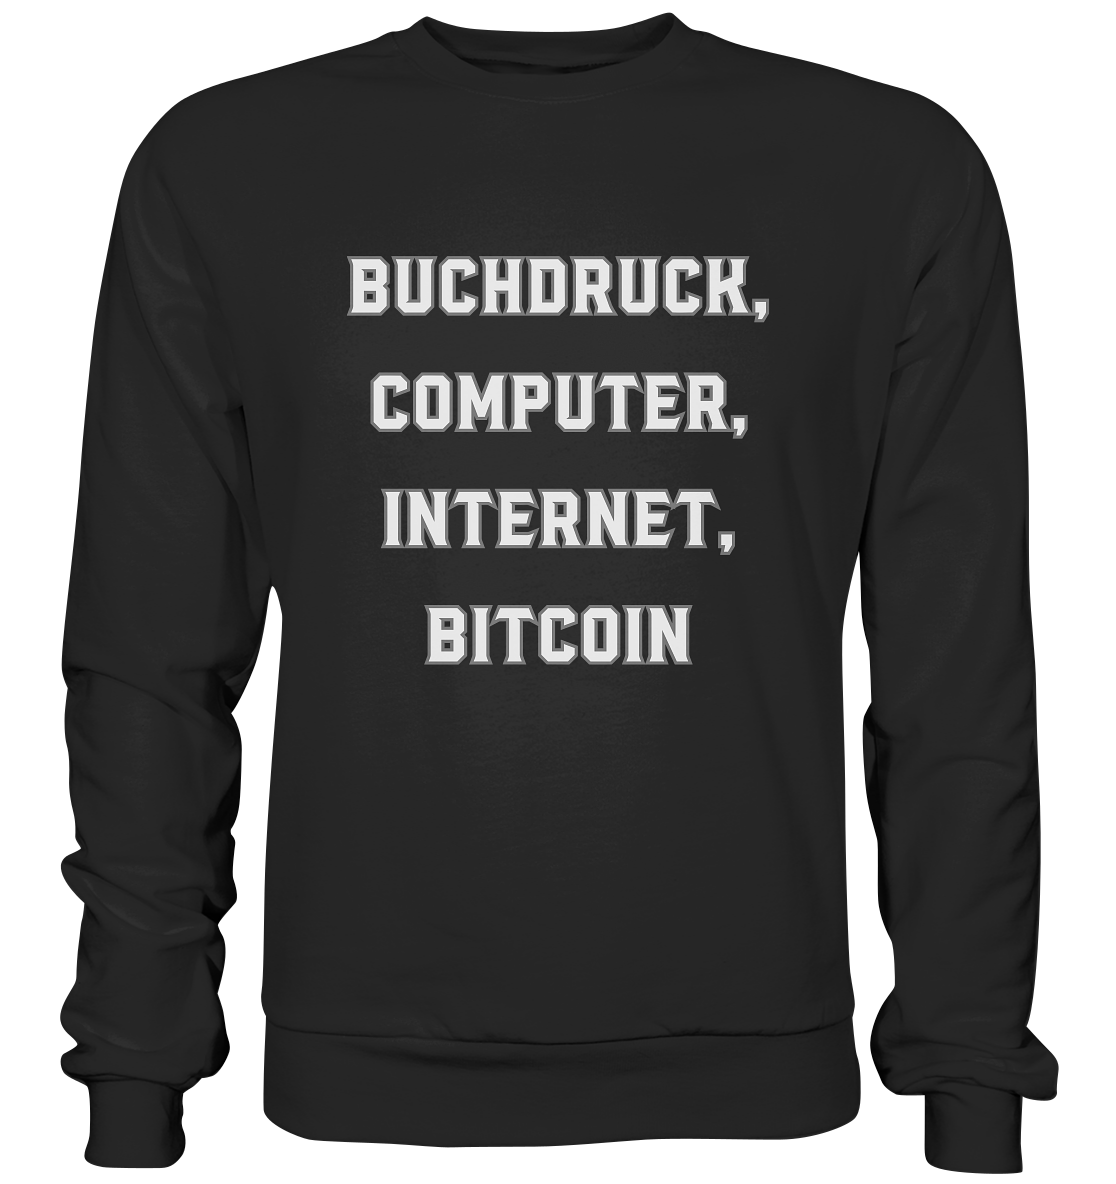 Buchdruck, Computer, Internet, Bitcoin - Premium Sweatshirt